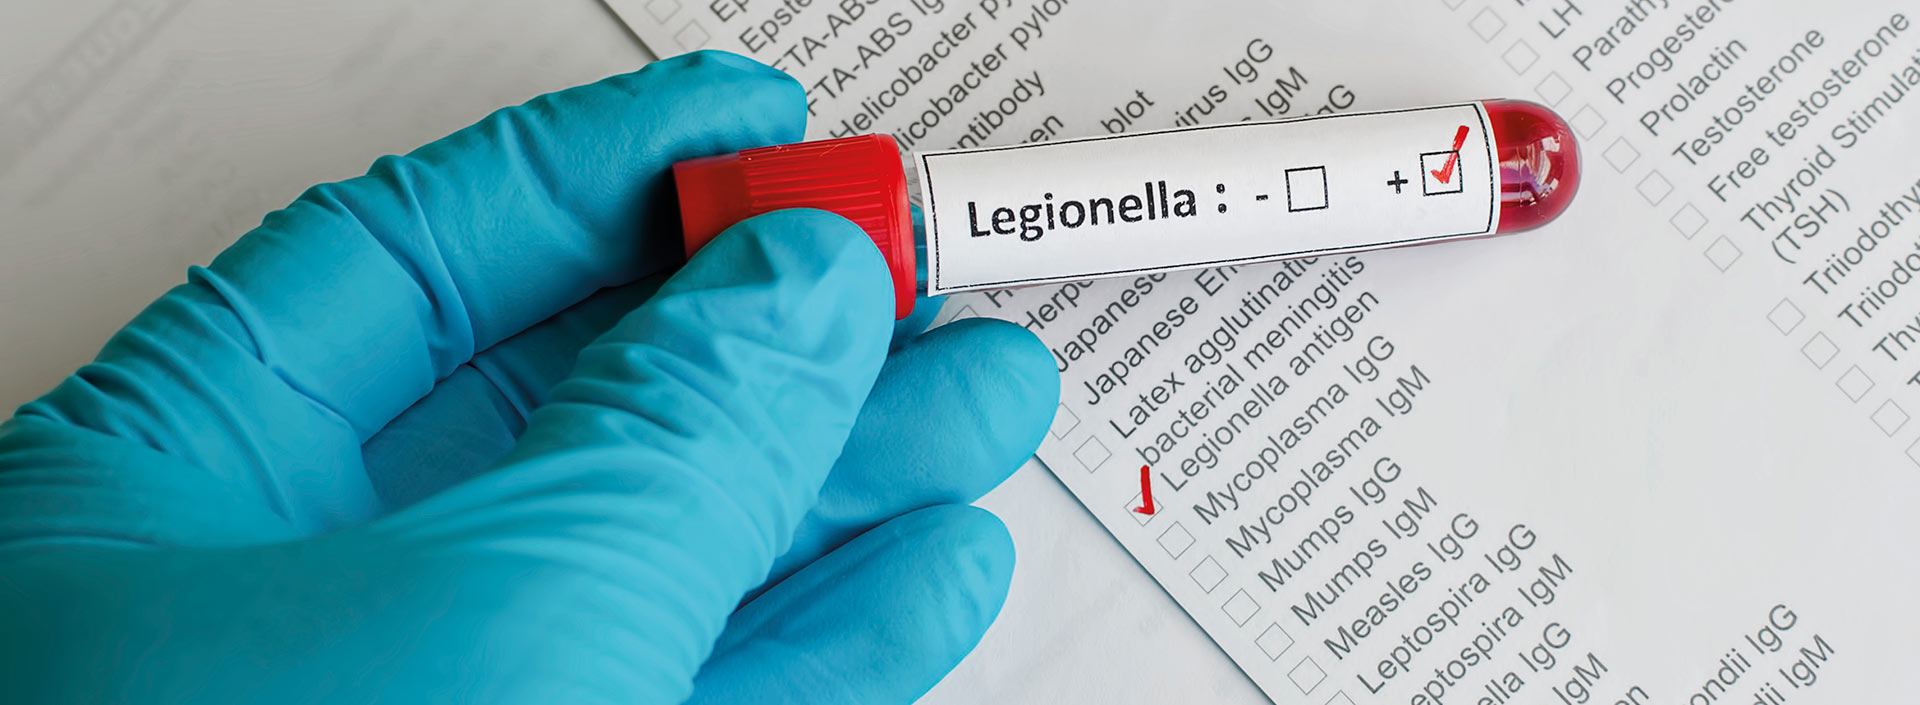 Control de Legionela